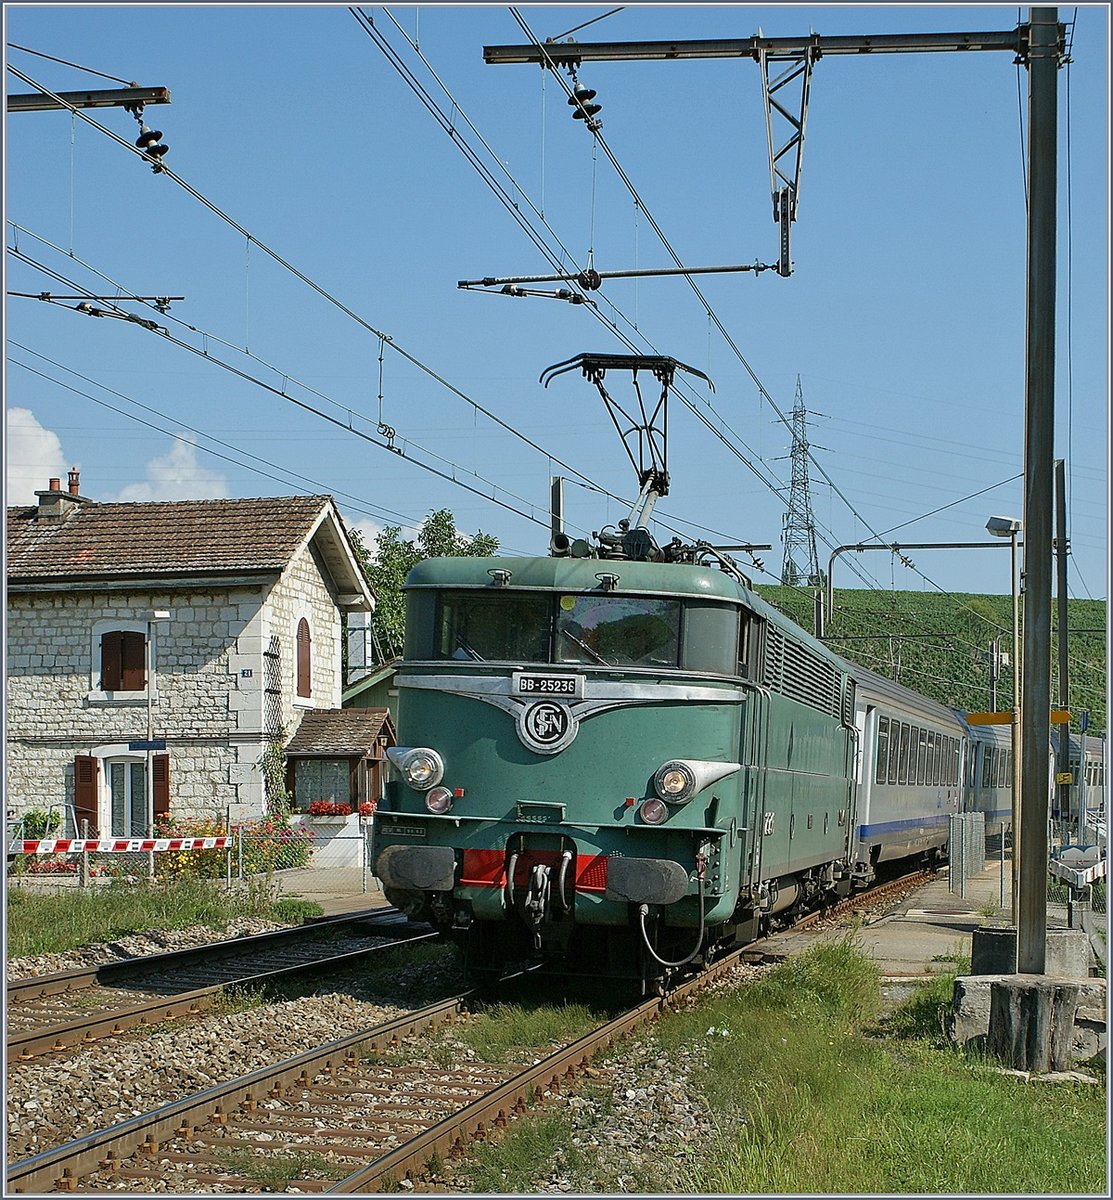 Fr mich das Highlight heute: die olivgrne BB 25 236 mit dem TER 96576 von Genve nach Lyon bei der Durchfahrt in Russin. 
(27. August 2009)